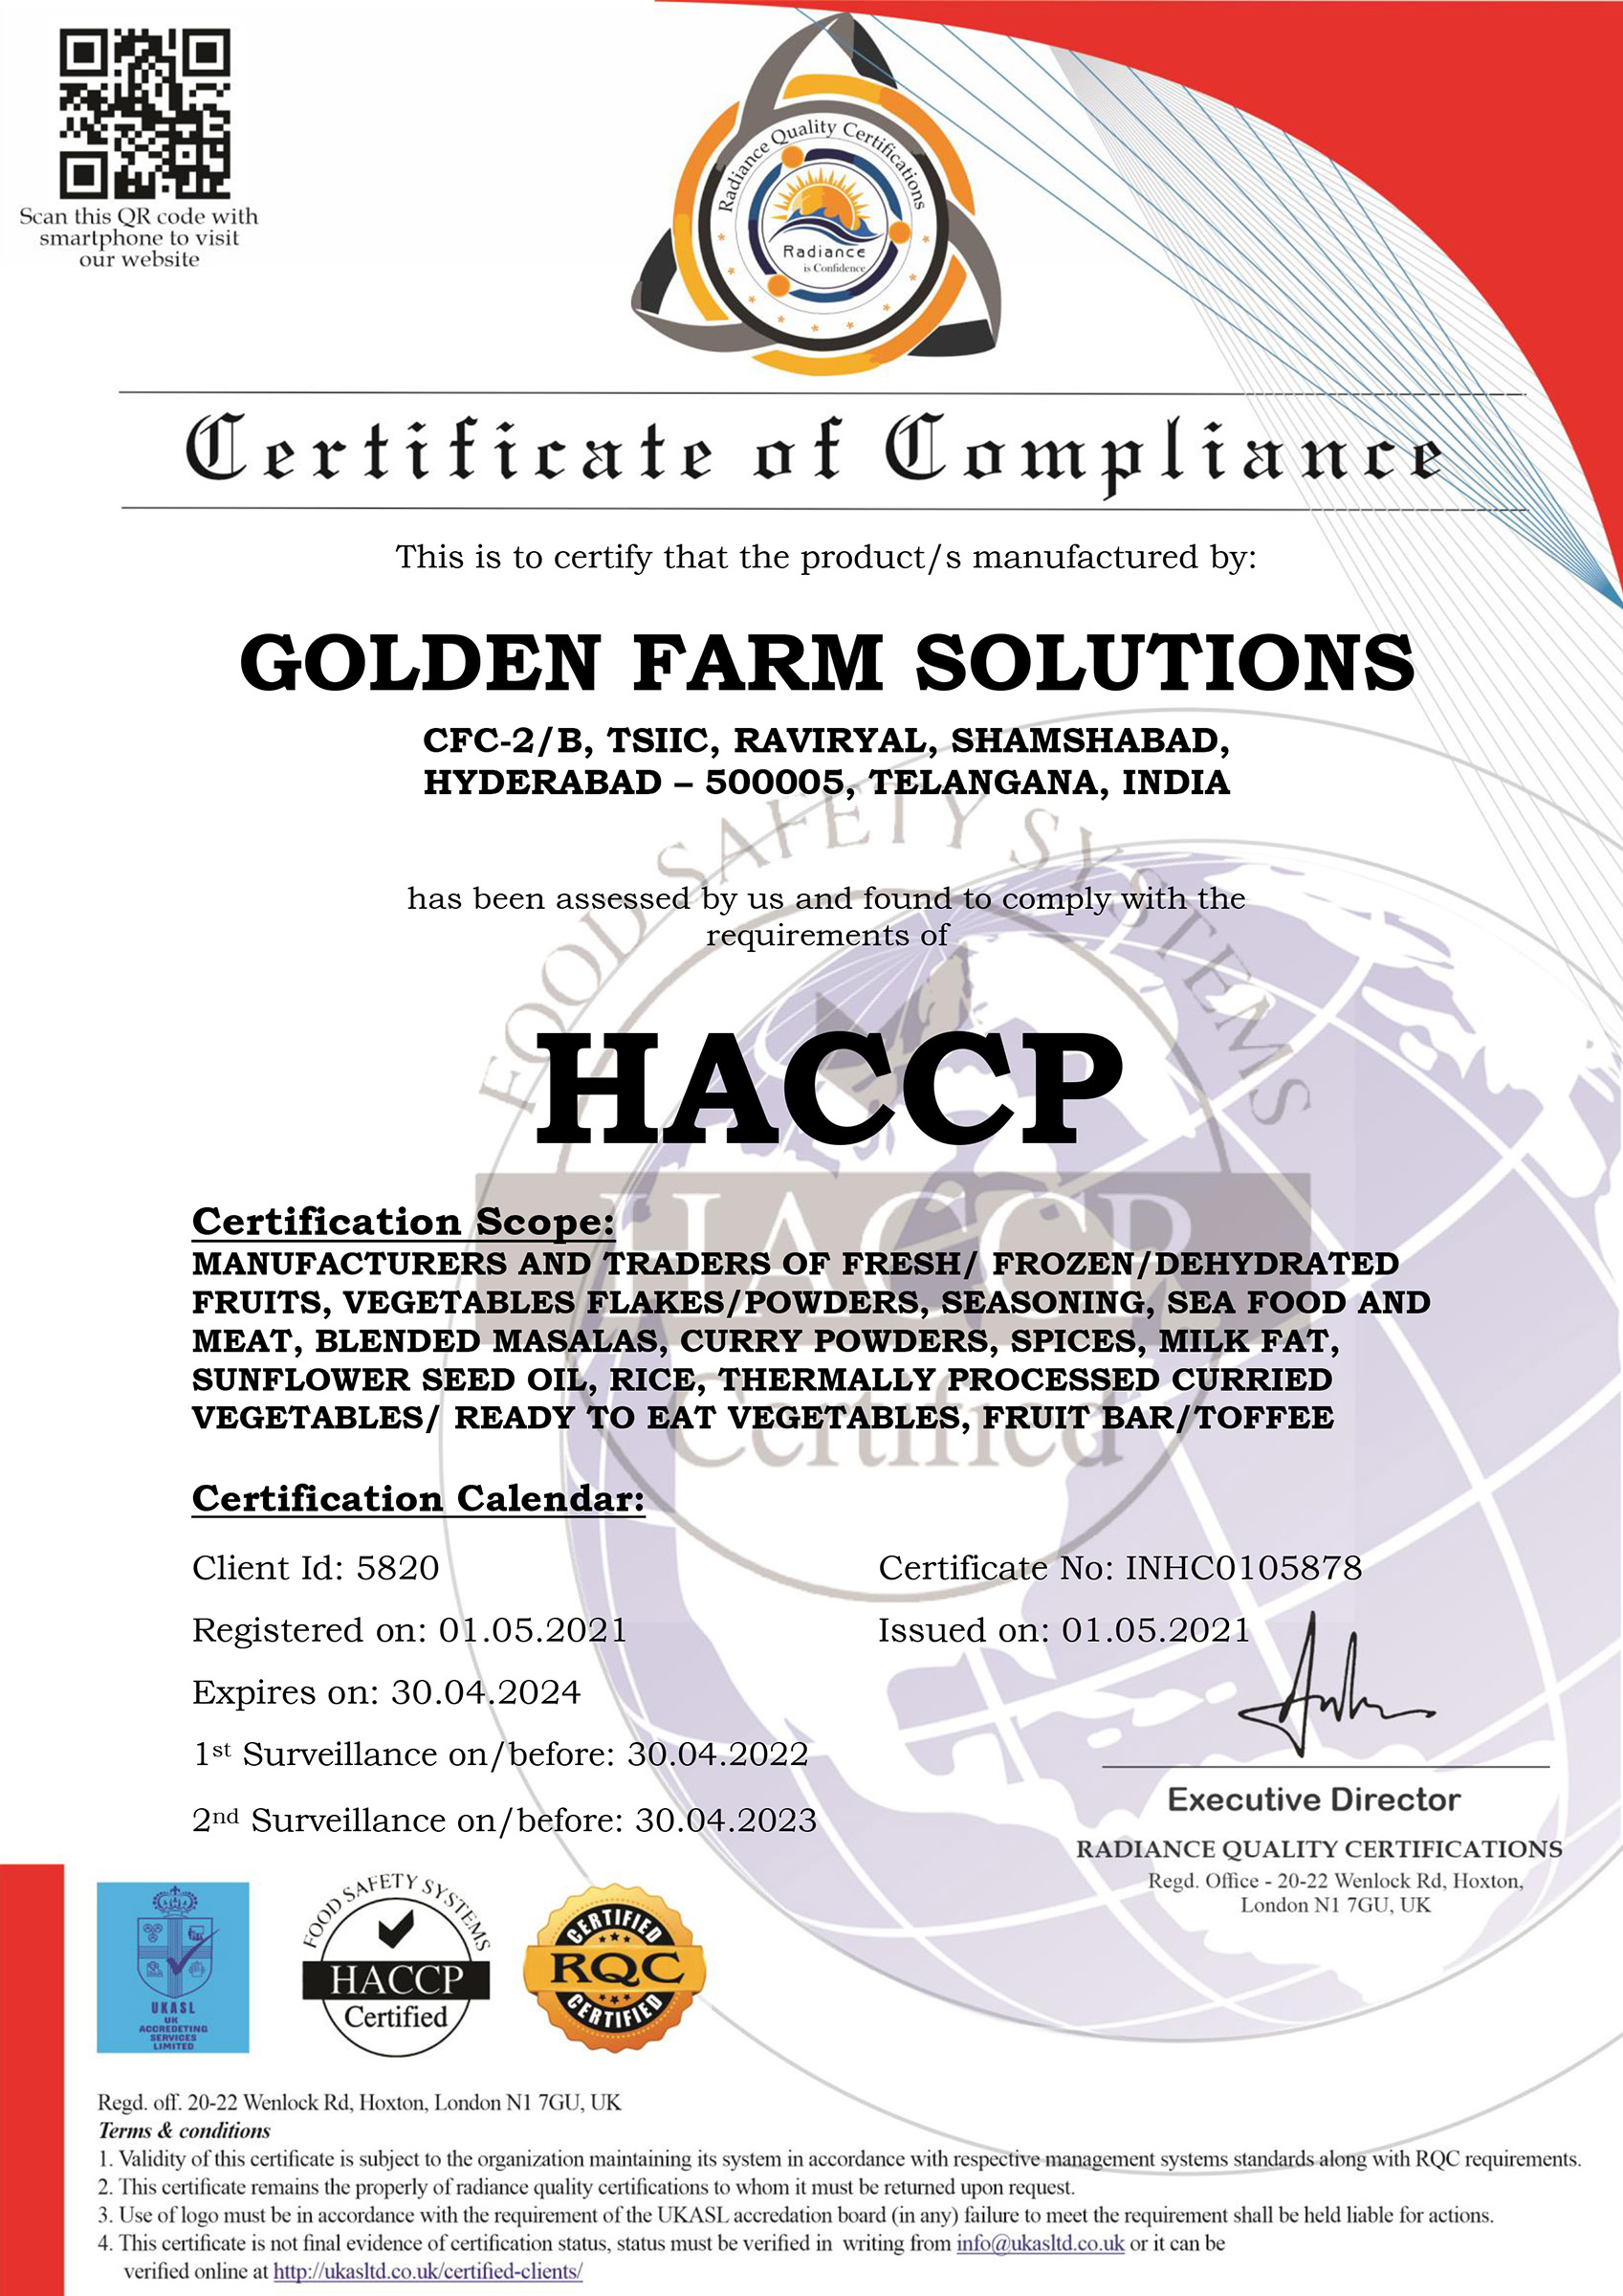 GFS - HACCP